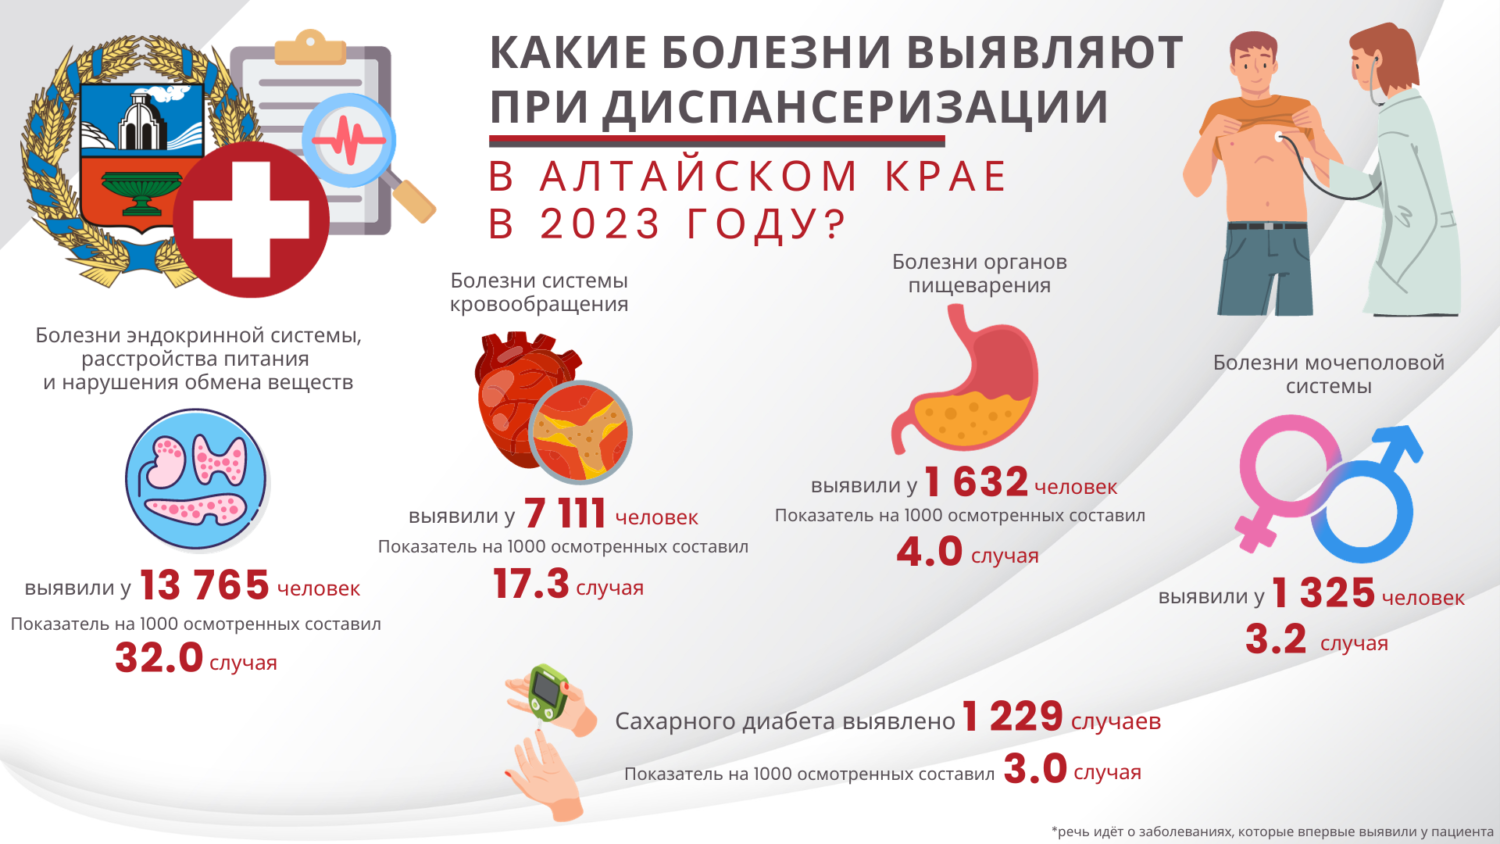 Какие болезни выявляют у жителей Алтайского края при диспансеризации? Инфографика